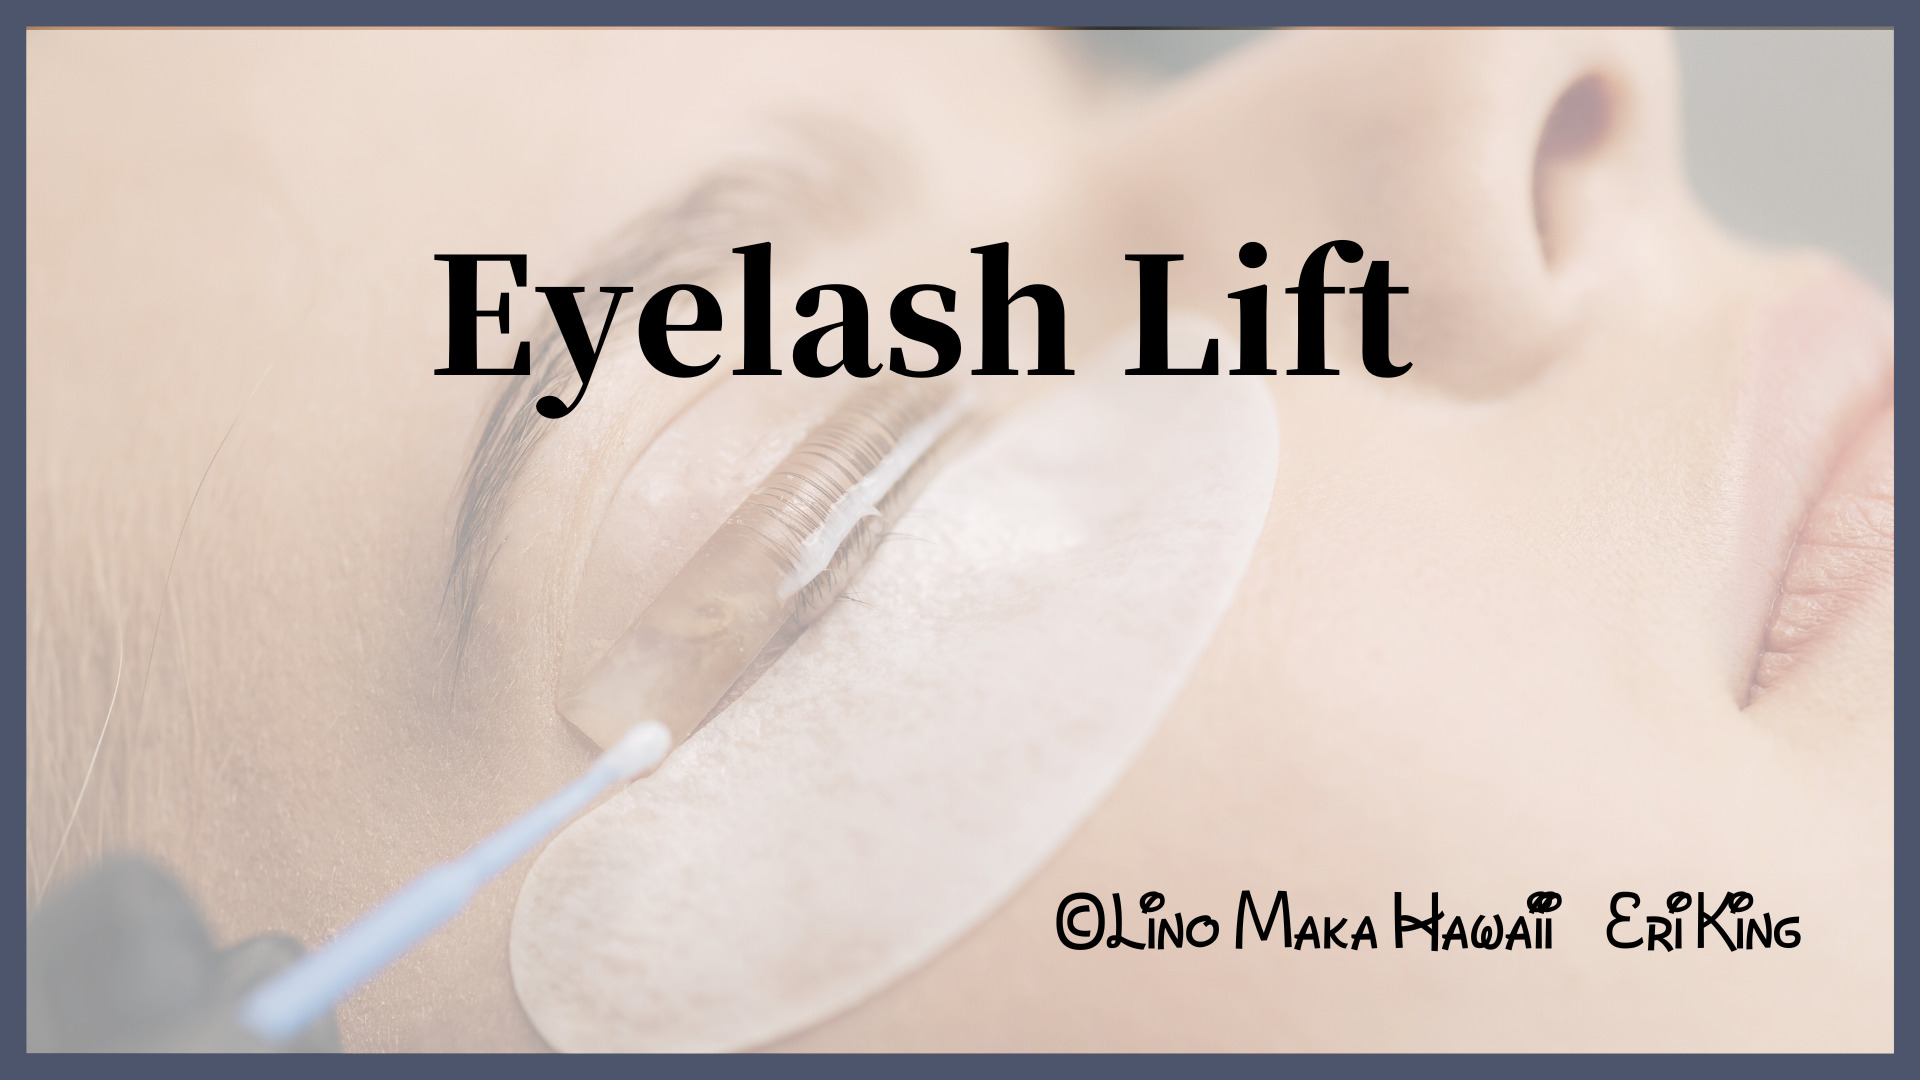 Eyelash Lift 講習 申込みフォーム